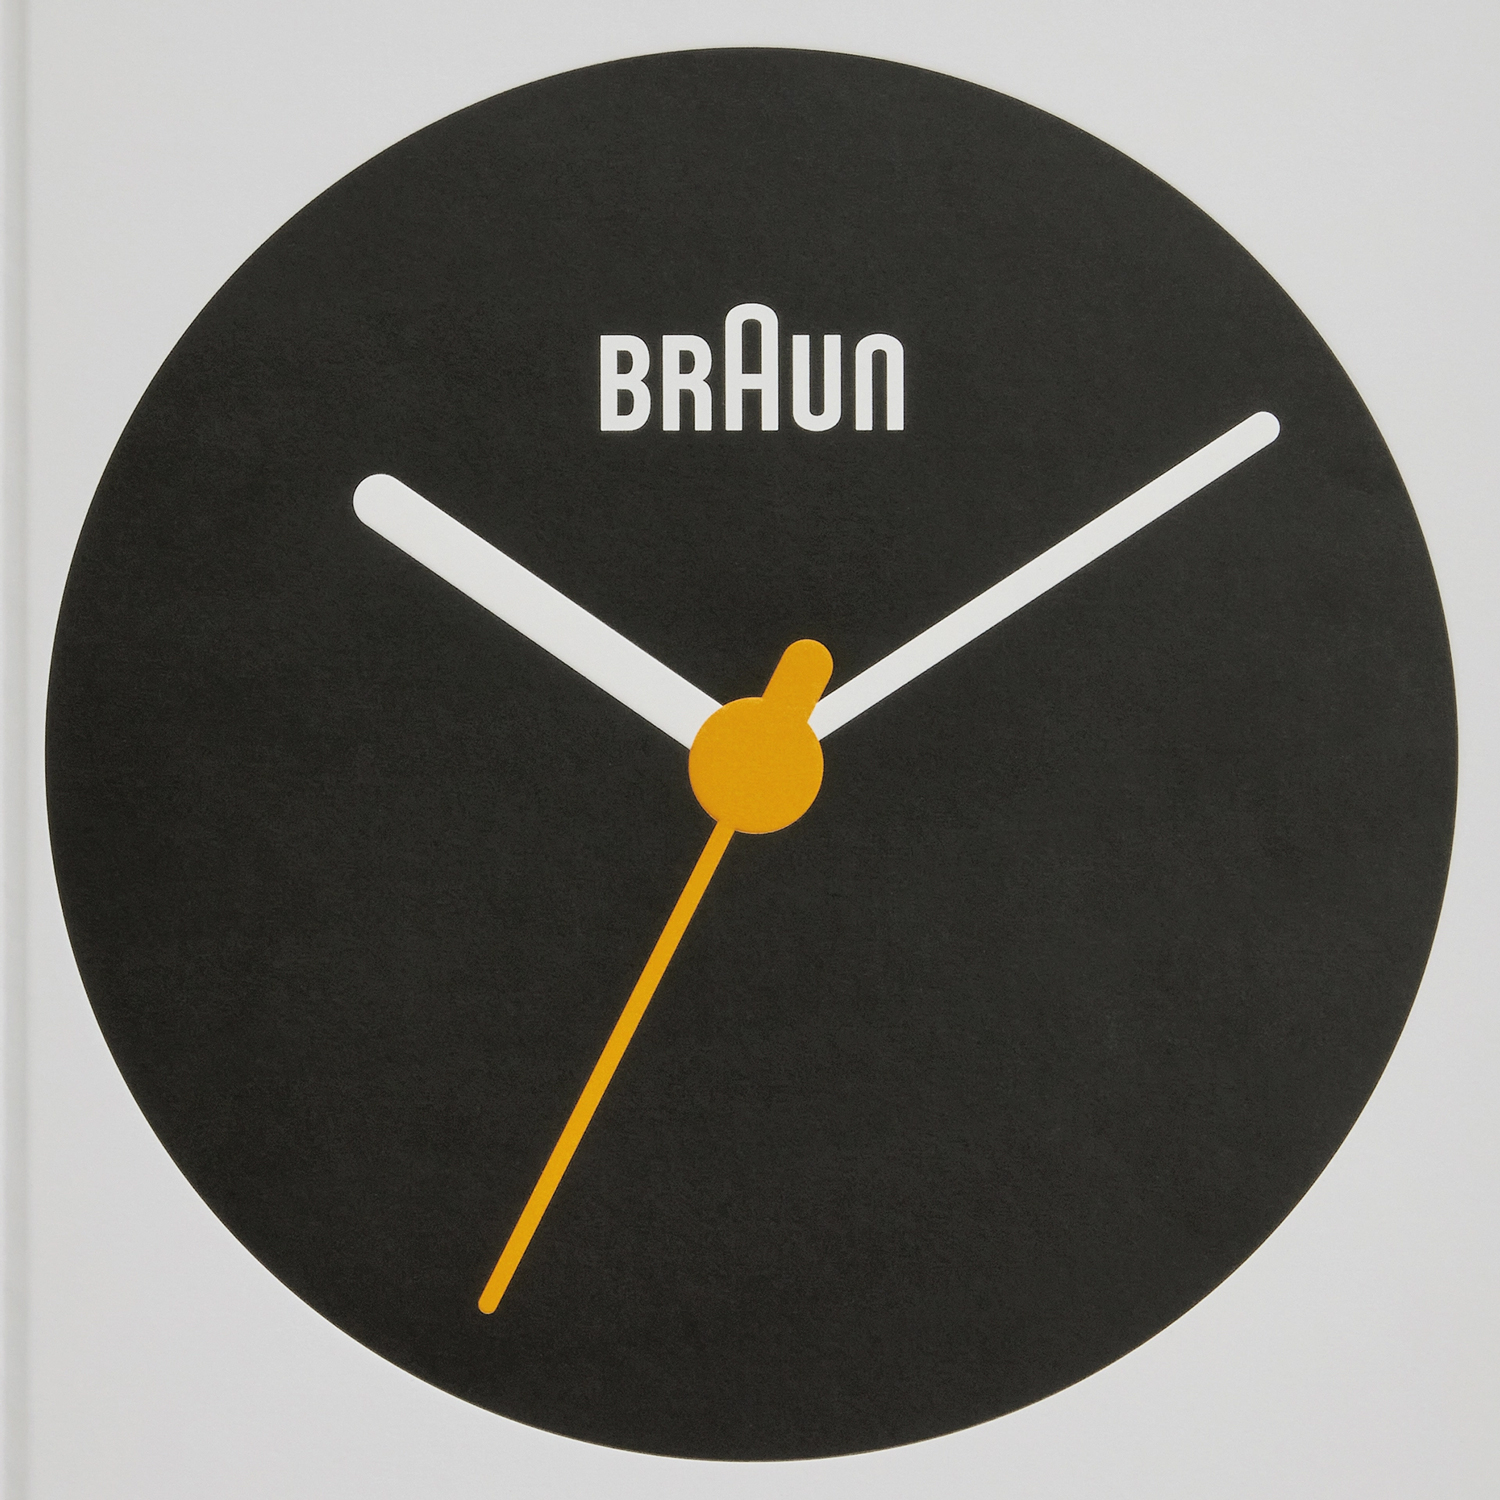 Braun: Kalıcı olması için tasarlandı resmi